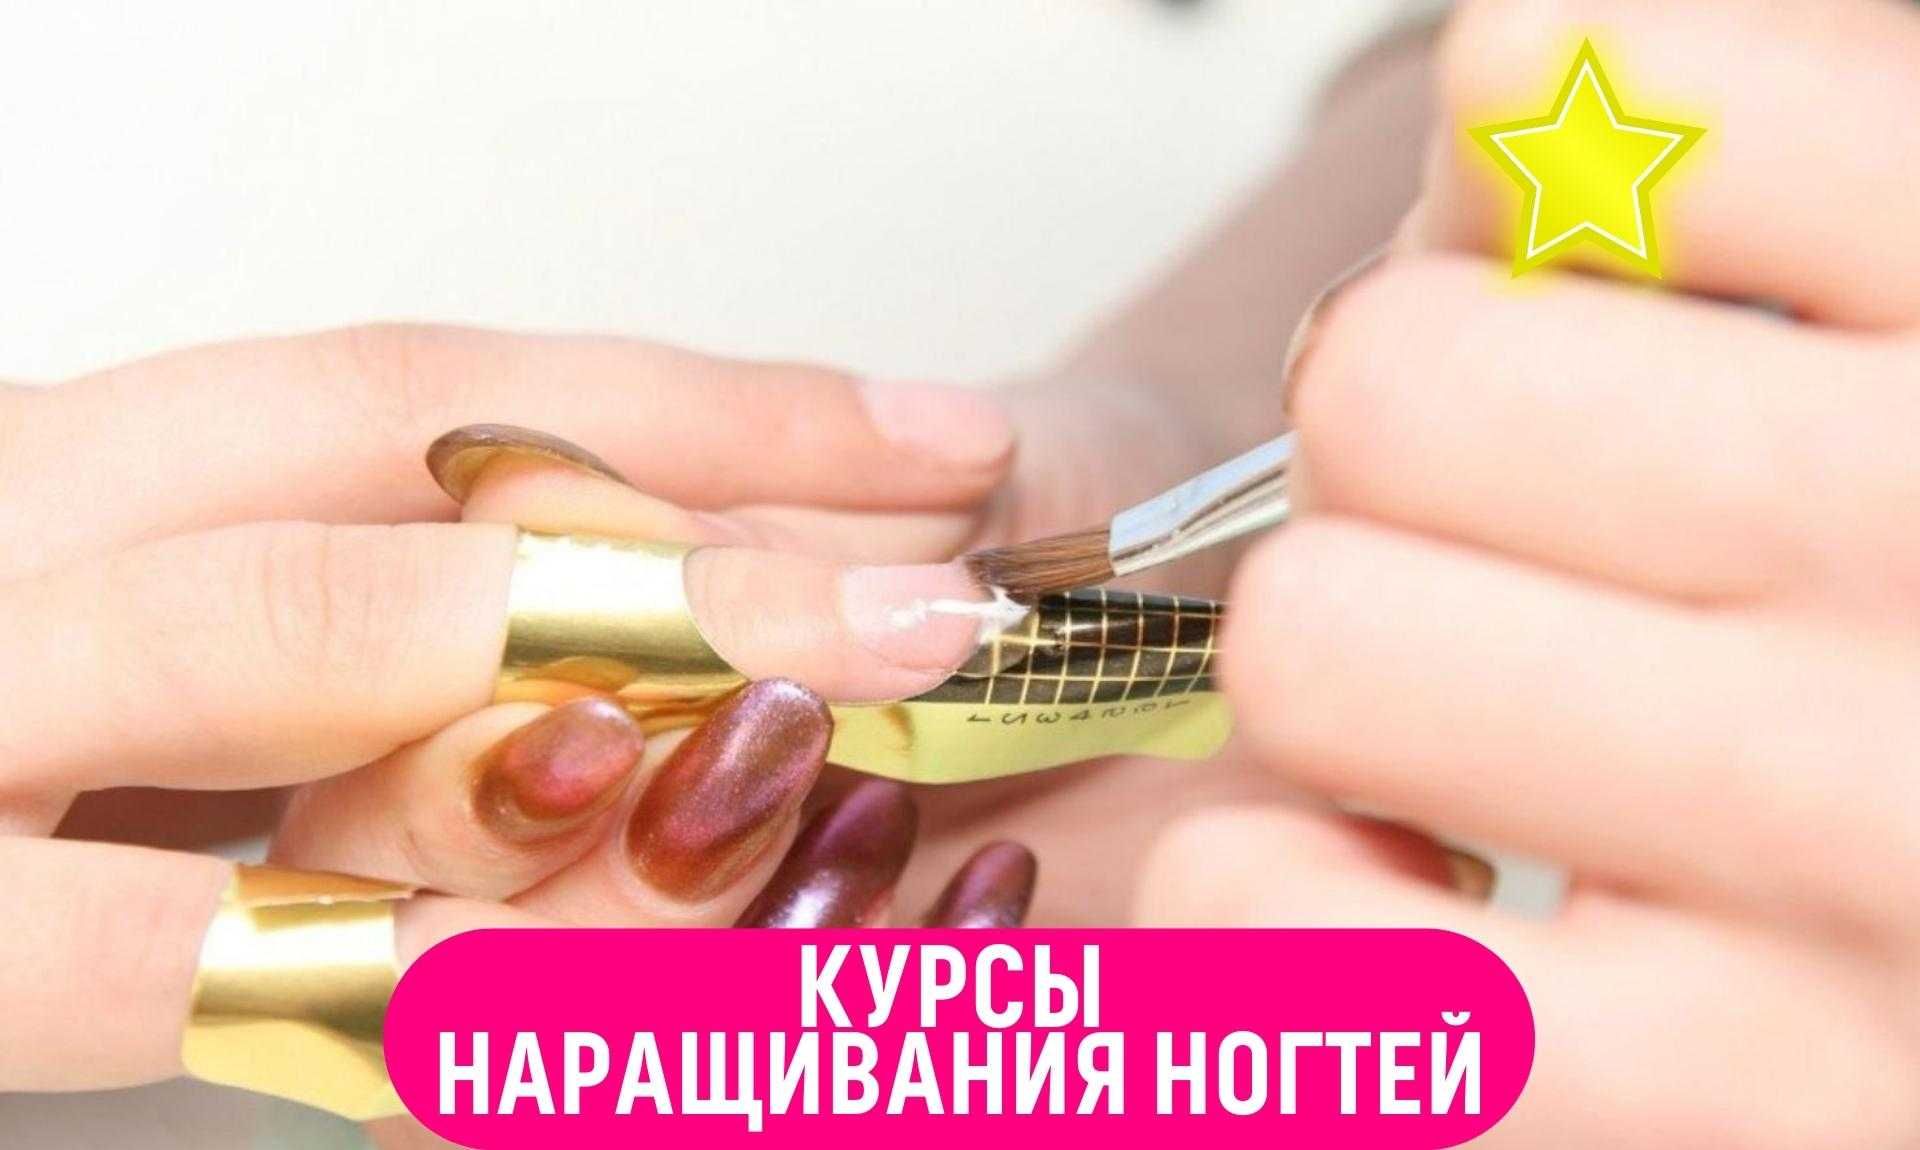 ‼️Курсы наращивания ногтей‼️ Ташкенте. Обучение наращиванию ногтей.